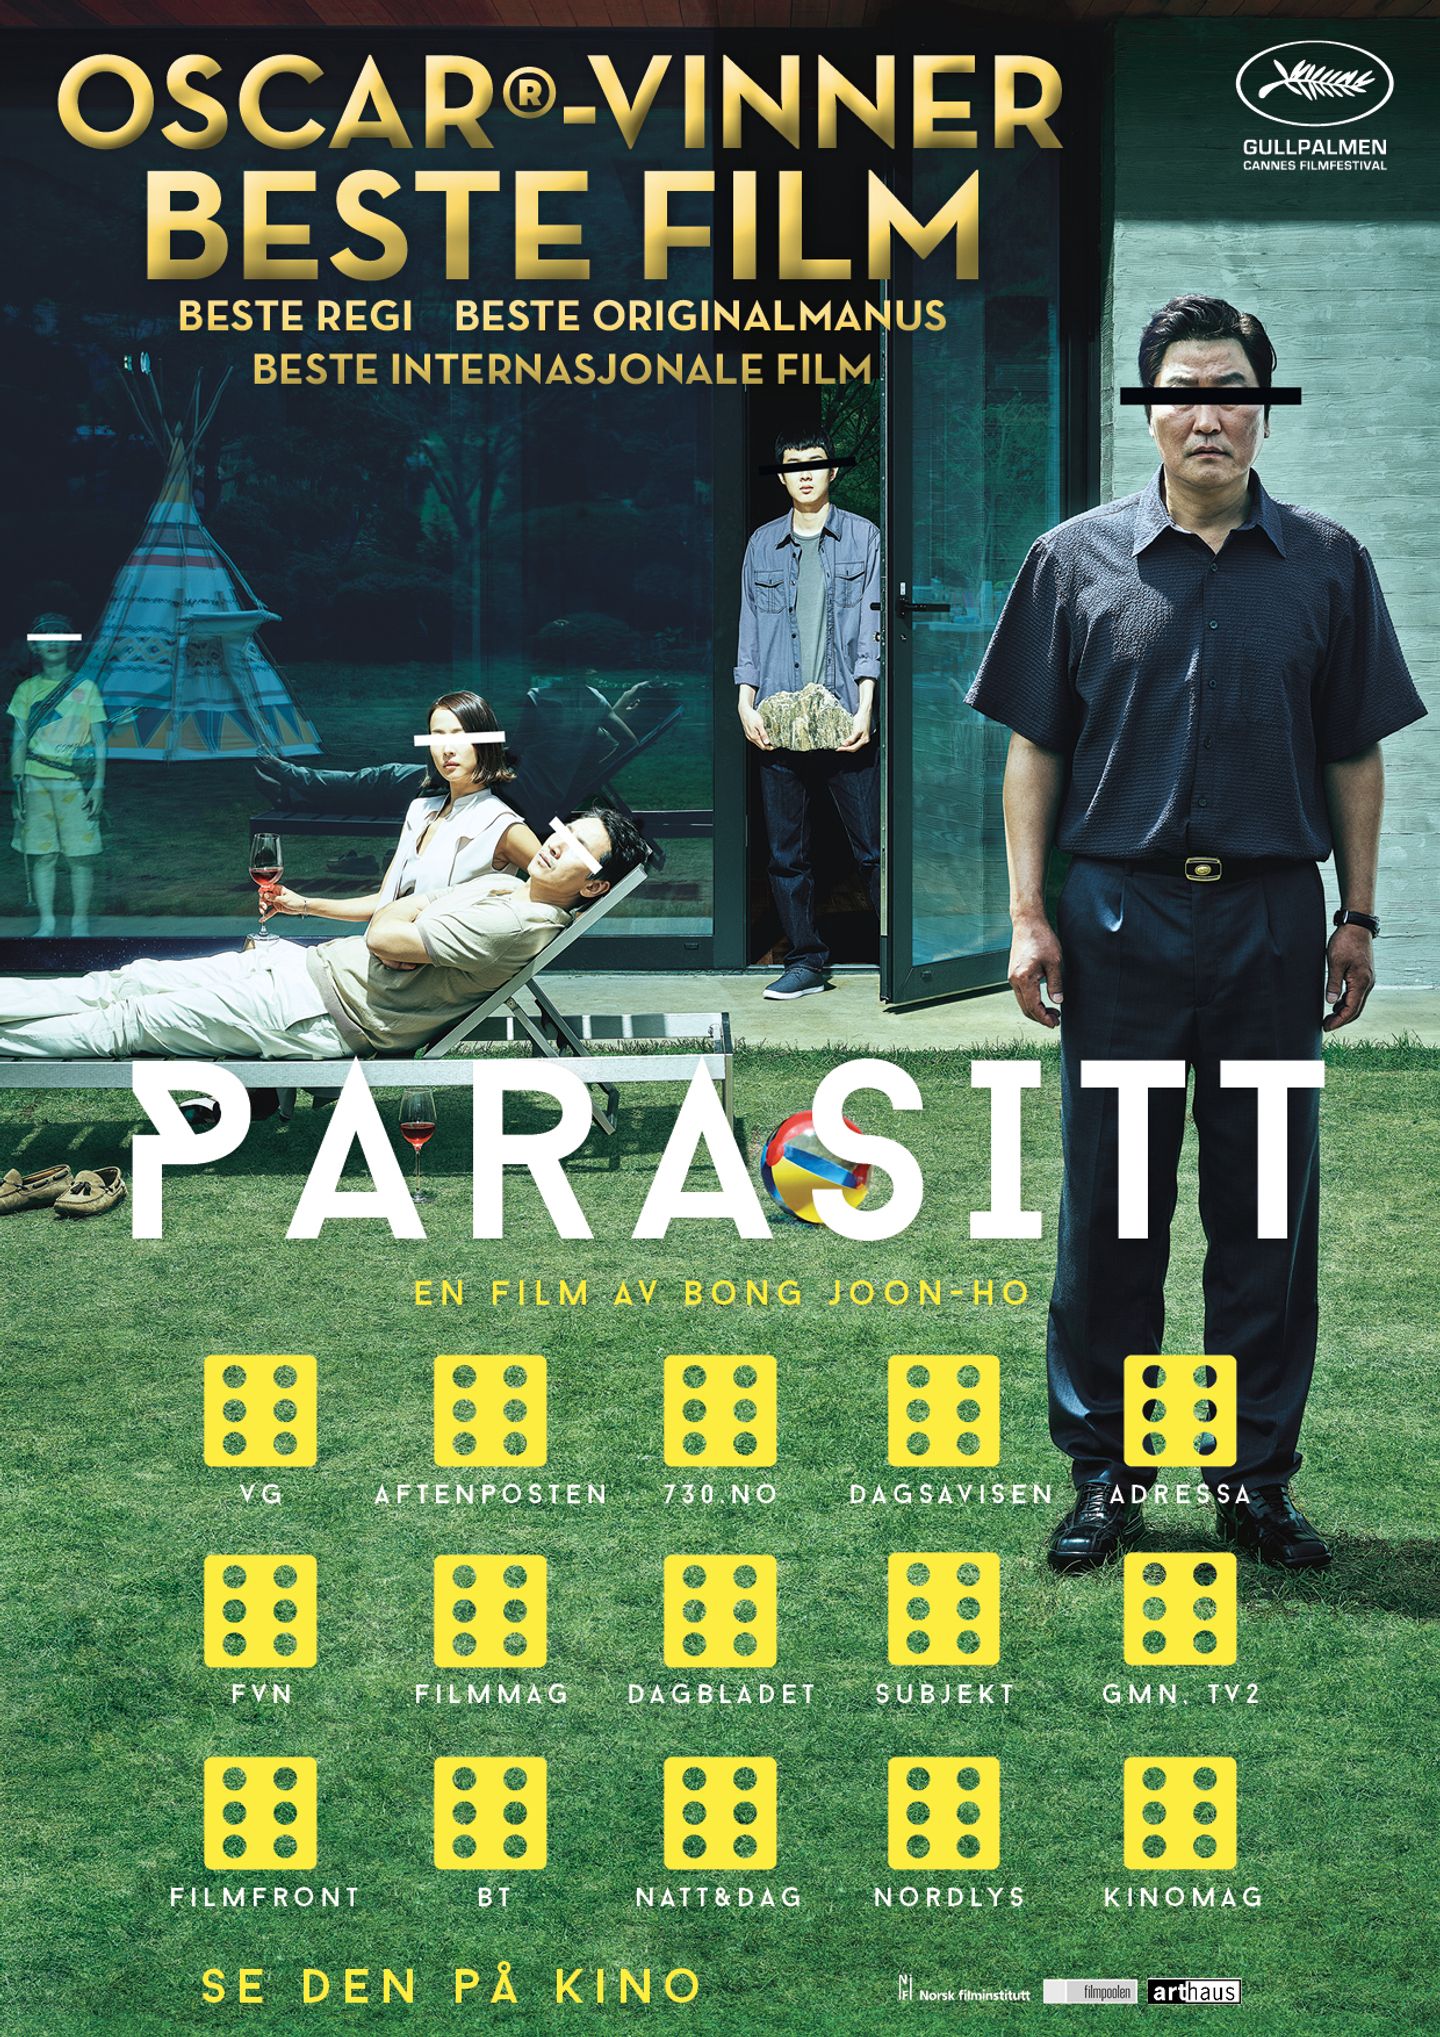 Plakat for 'Parasitt'